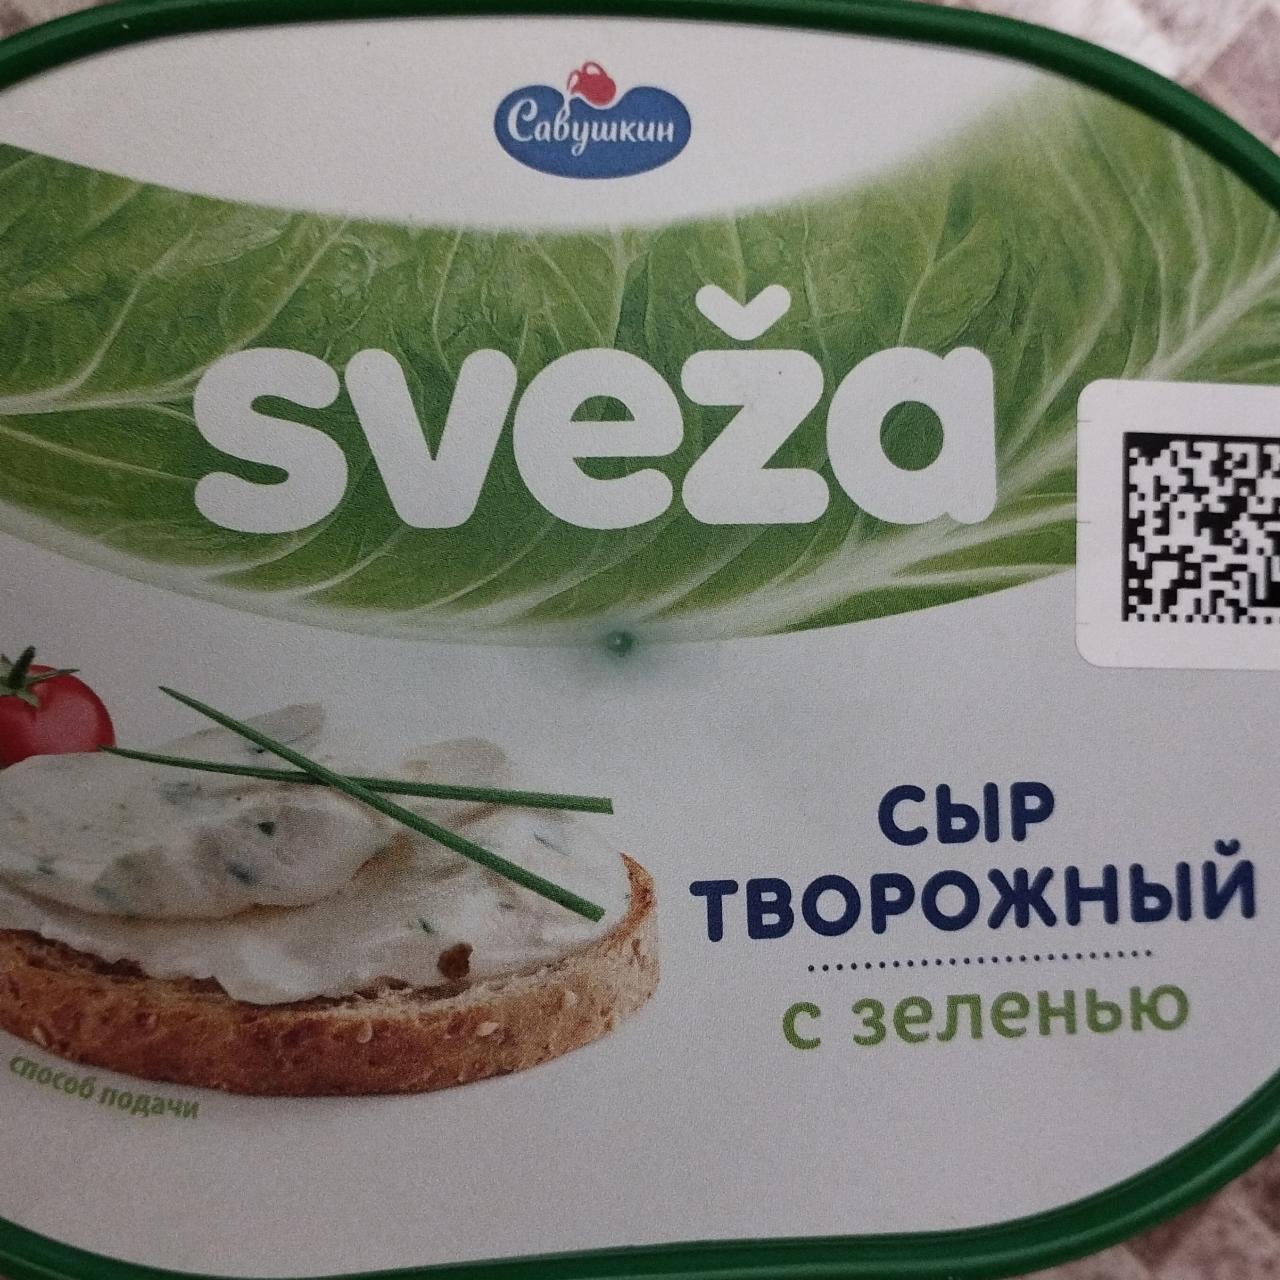 Фото - Сыр творожный Свежа Sveza с зеленью Савушкин